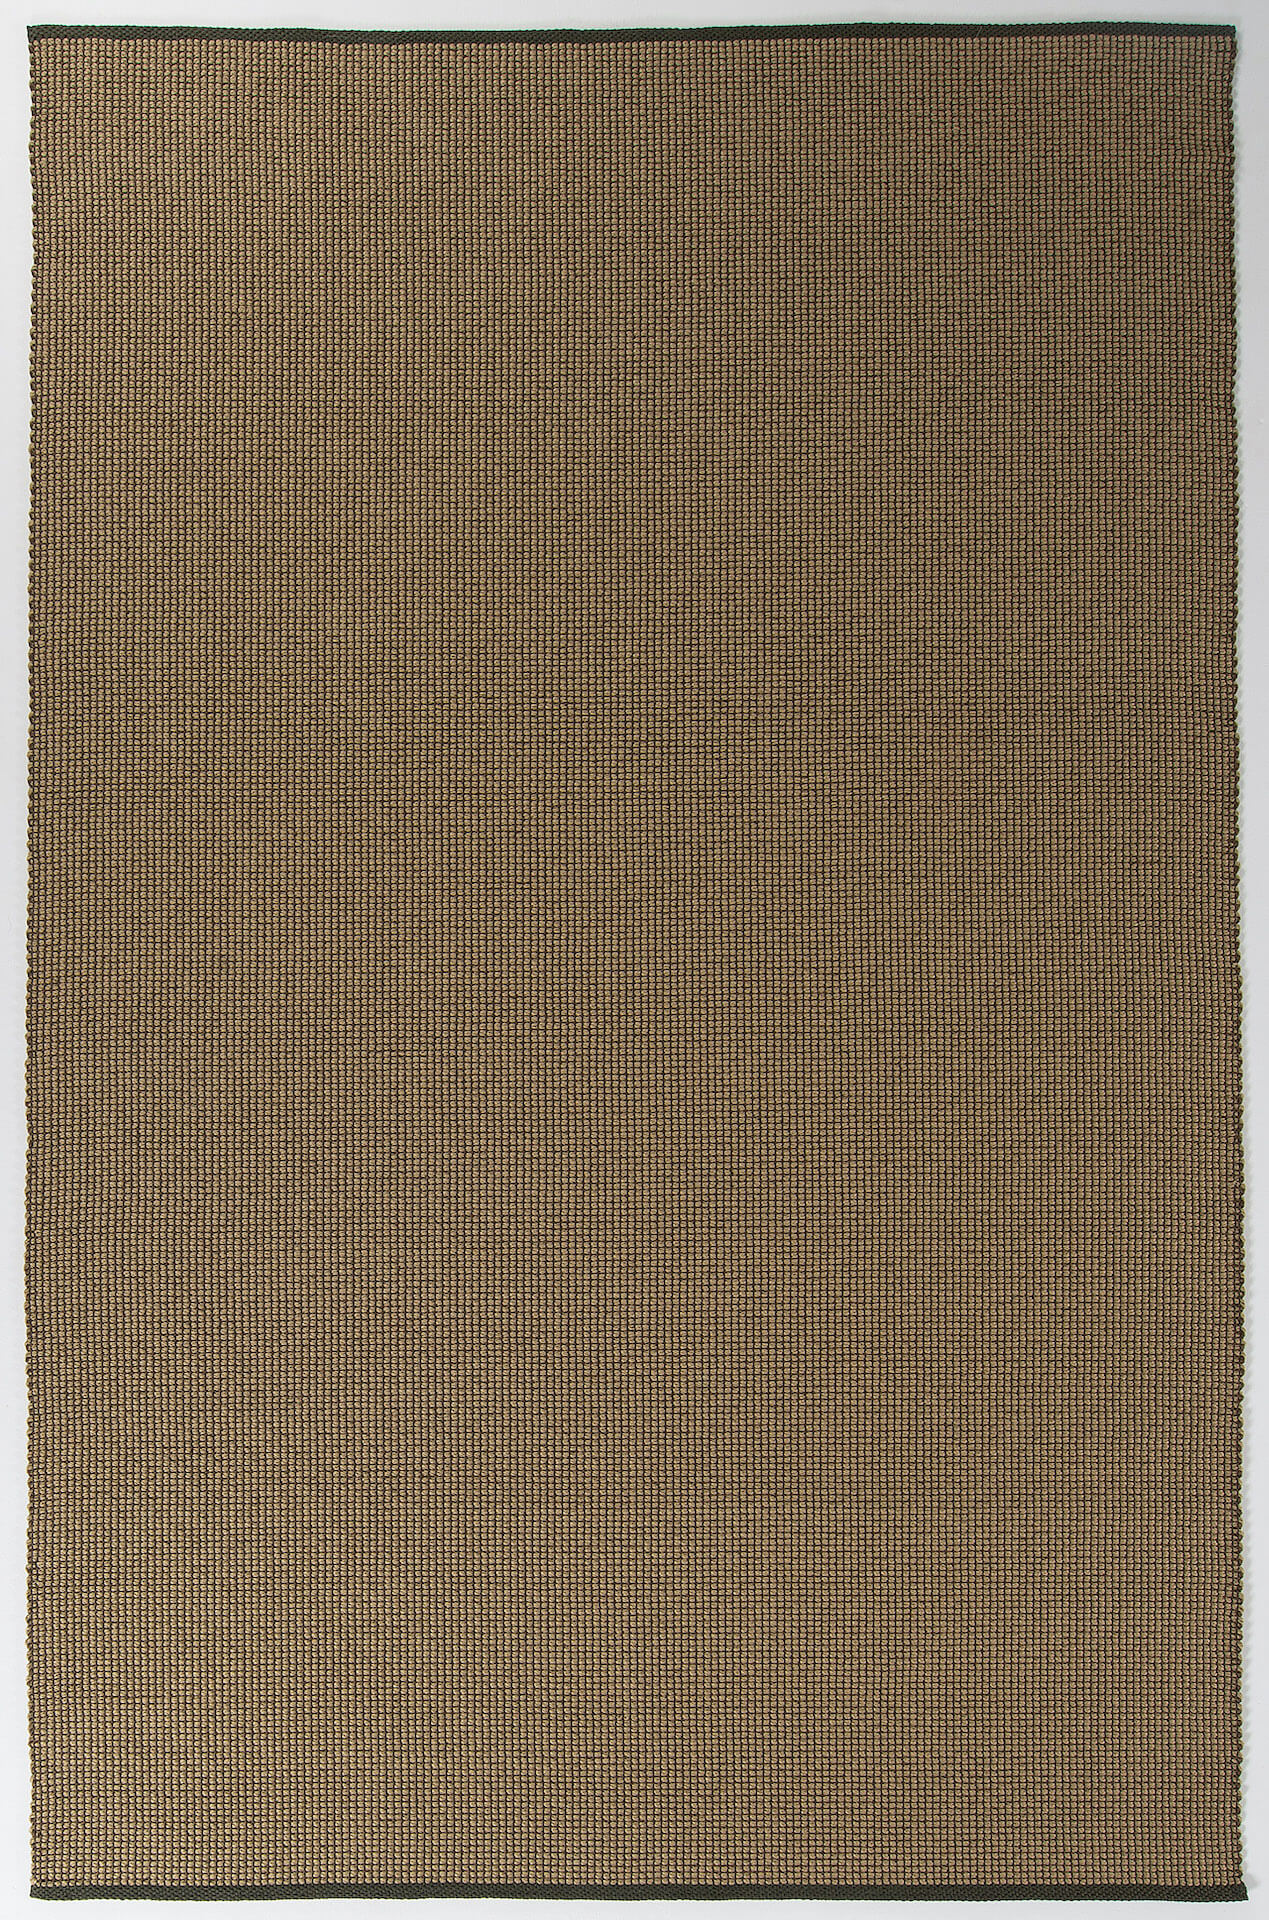 Tisca Outdoorteppich Lambro, Farbe 1042, lichtecht & wasserfest, Draufsicht